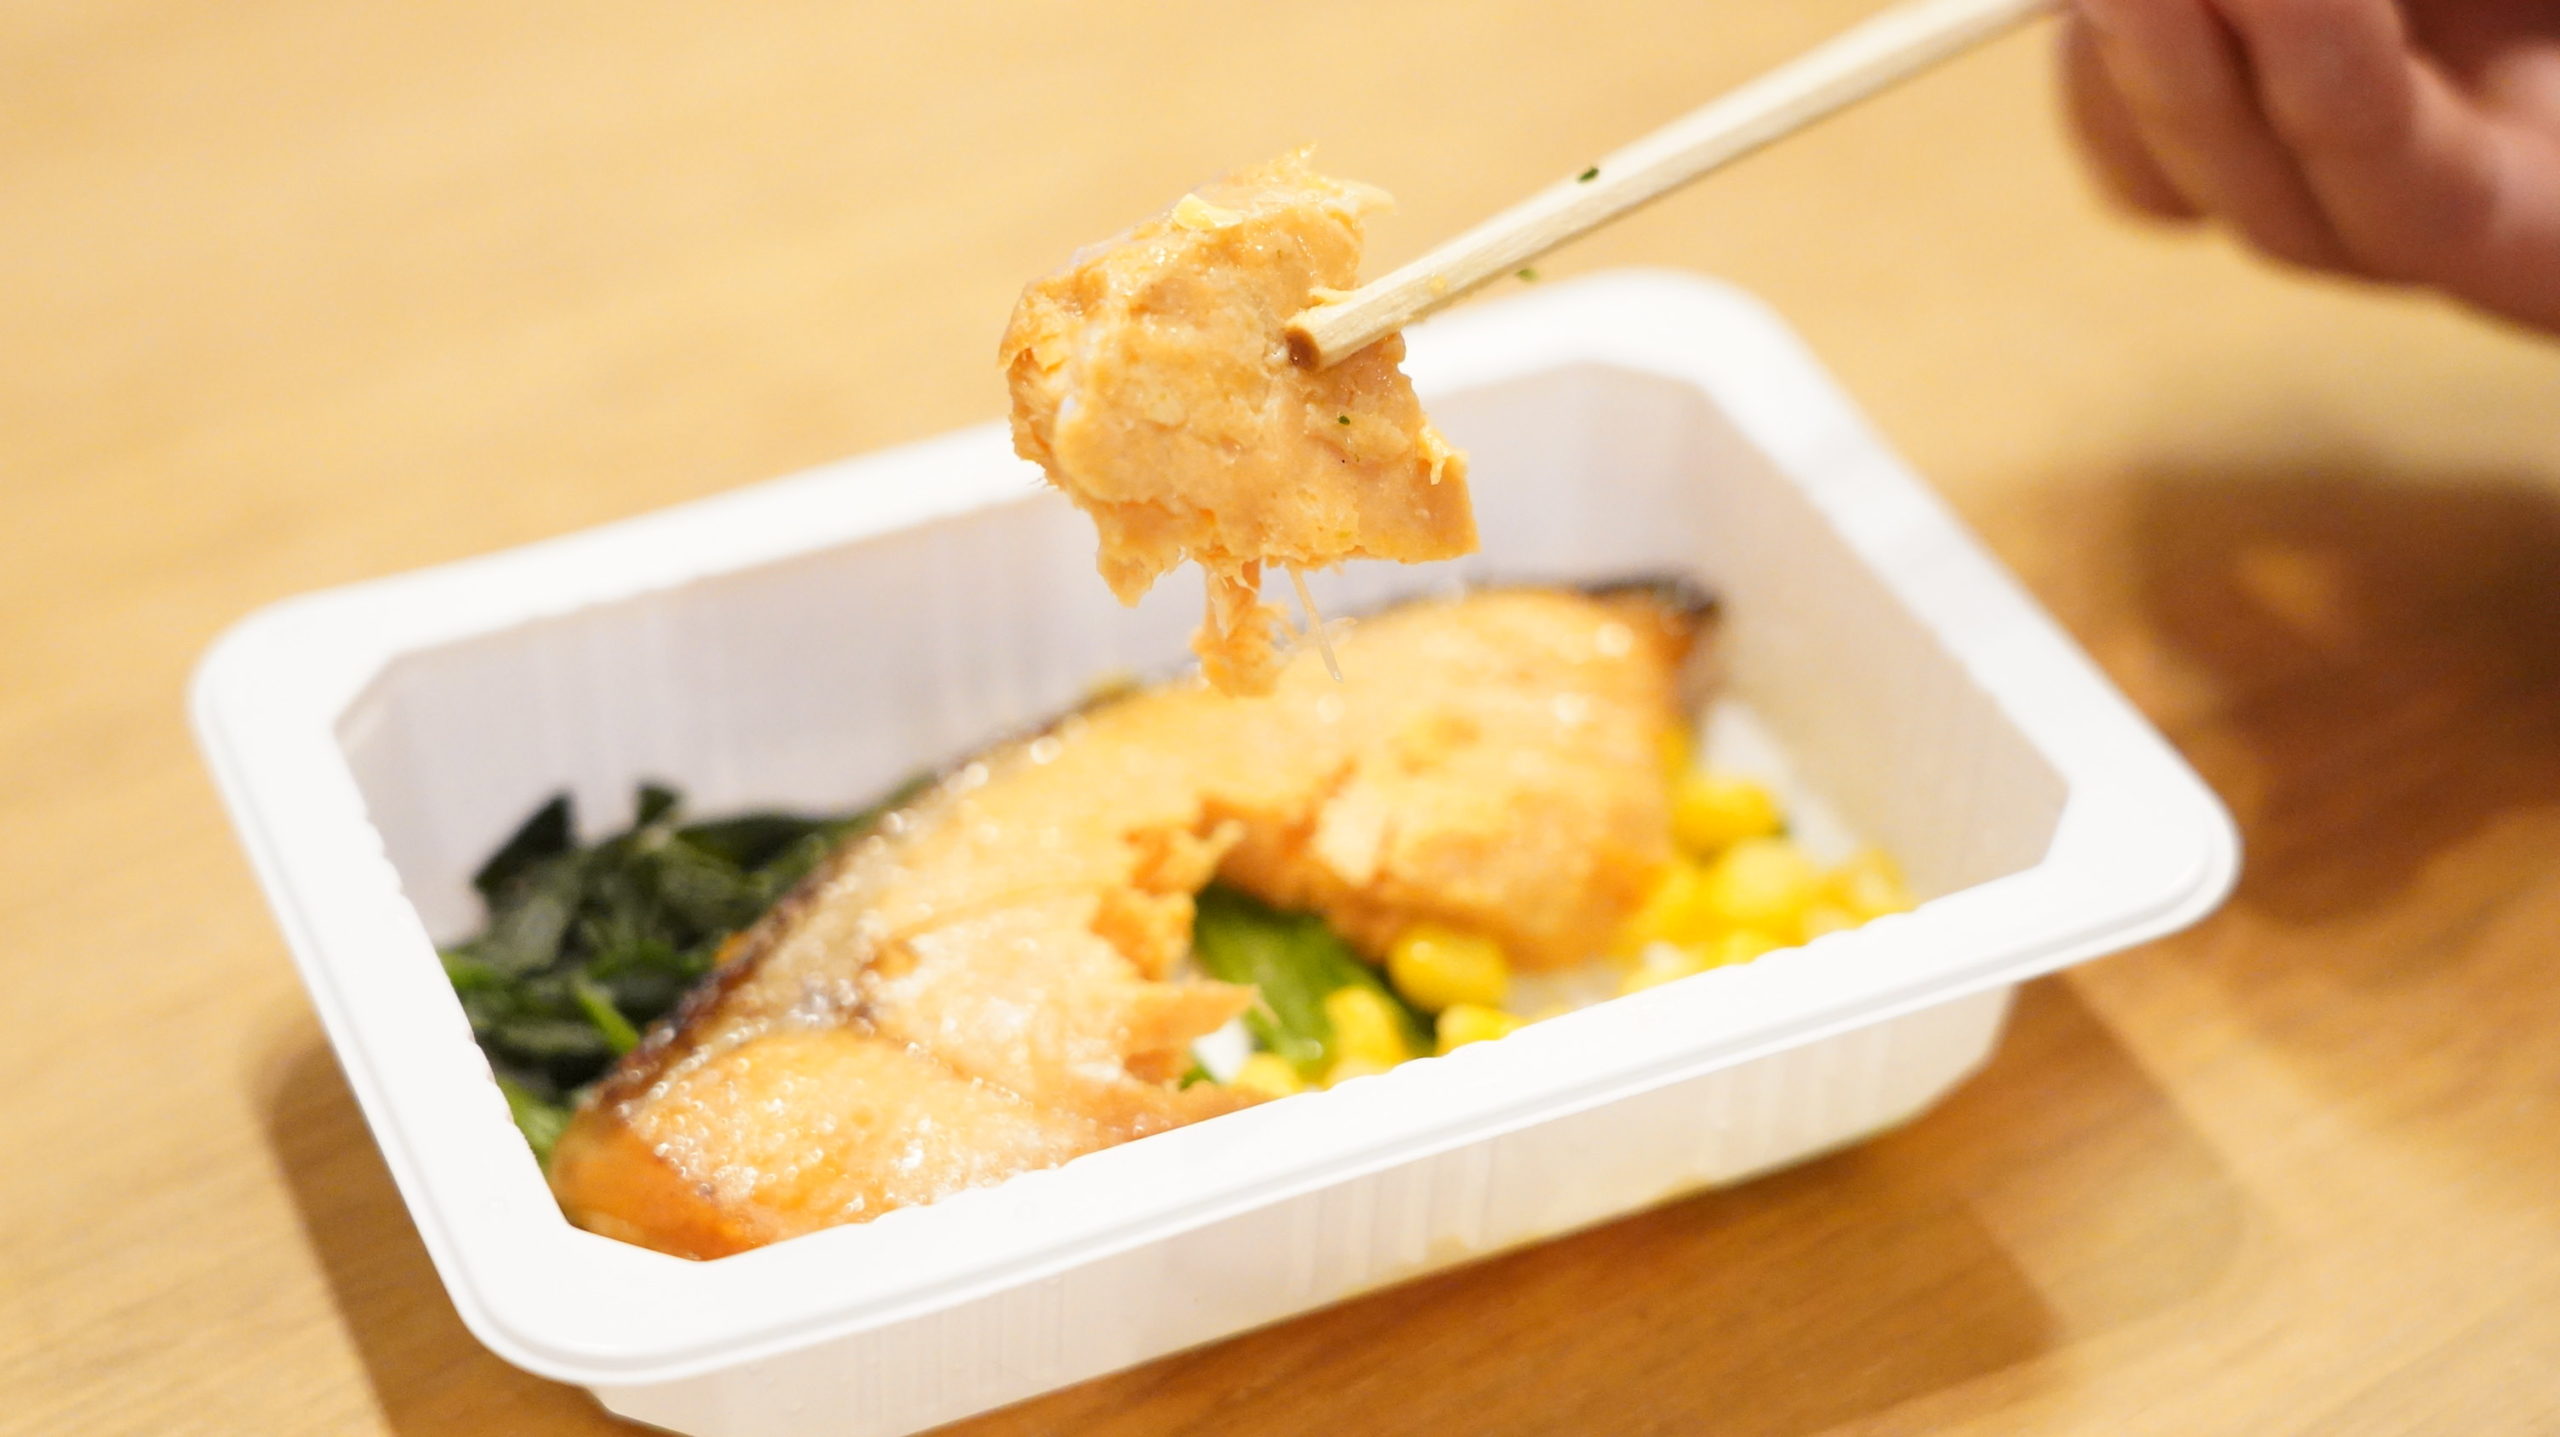 セブンイレブンの冷凍食品「バター香る銀鮭の醤油焼」の銀鮭を箸でつまんでいる写真